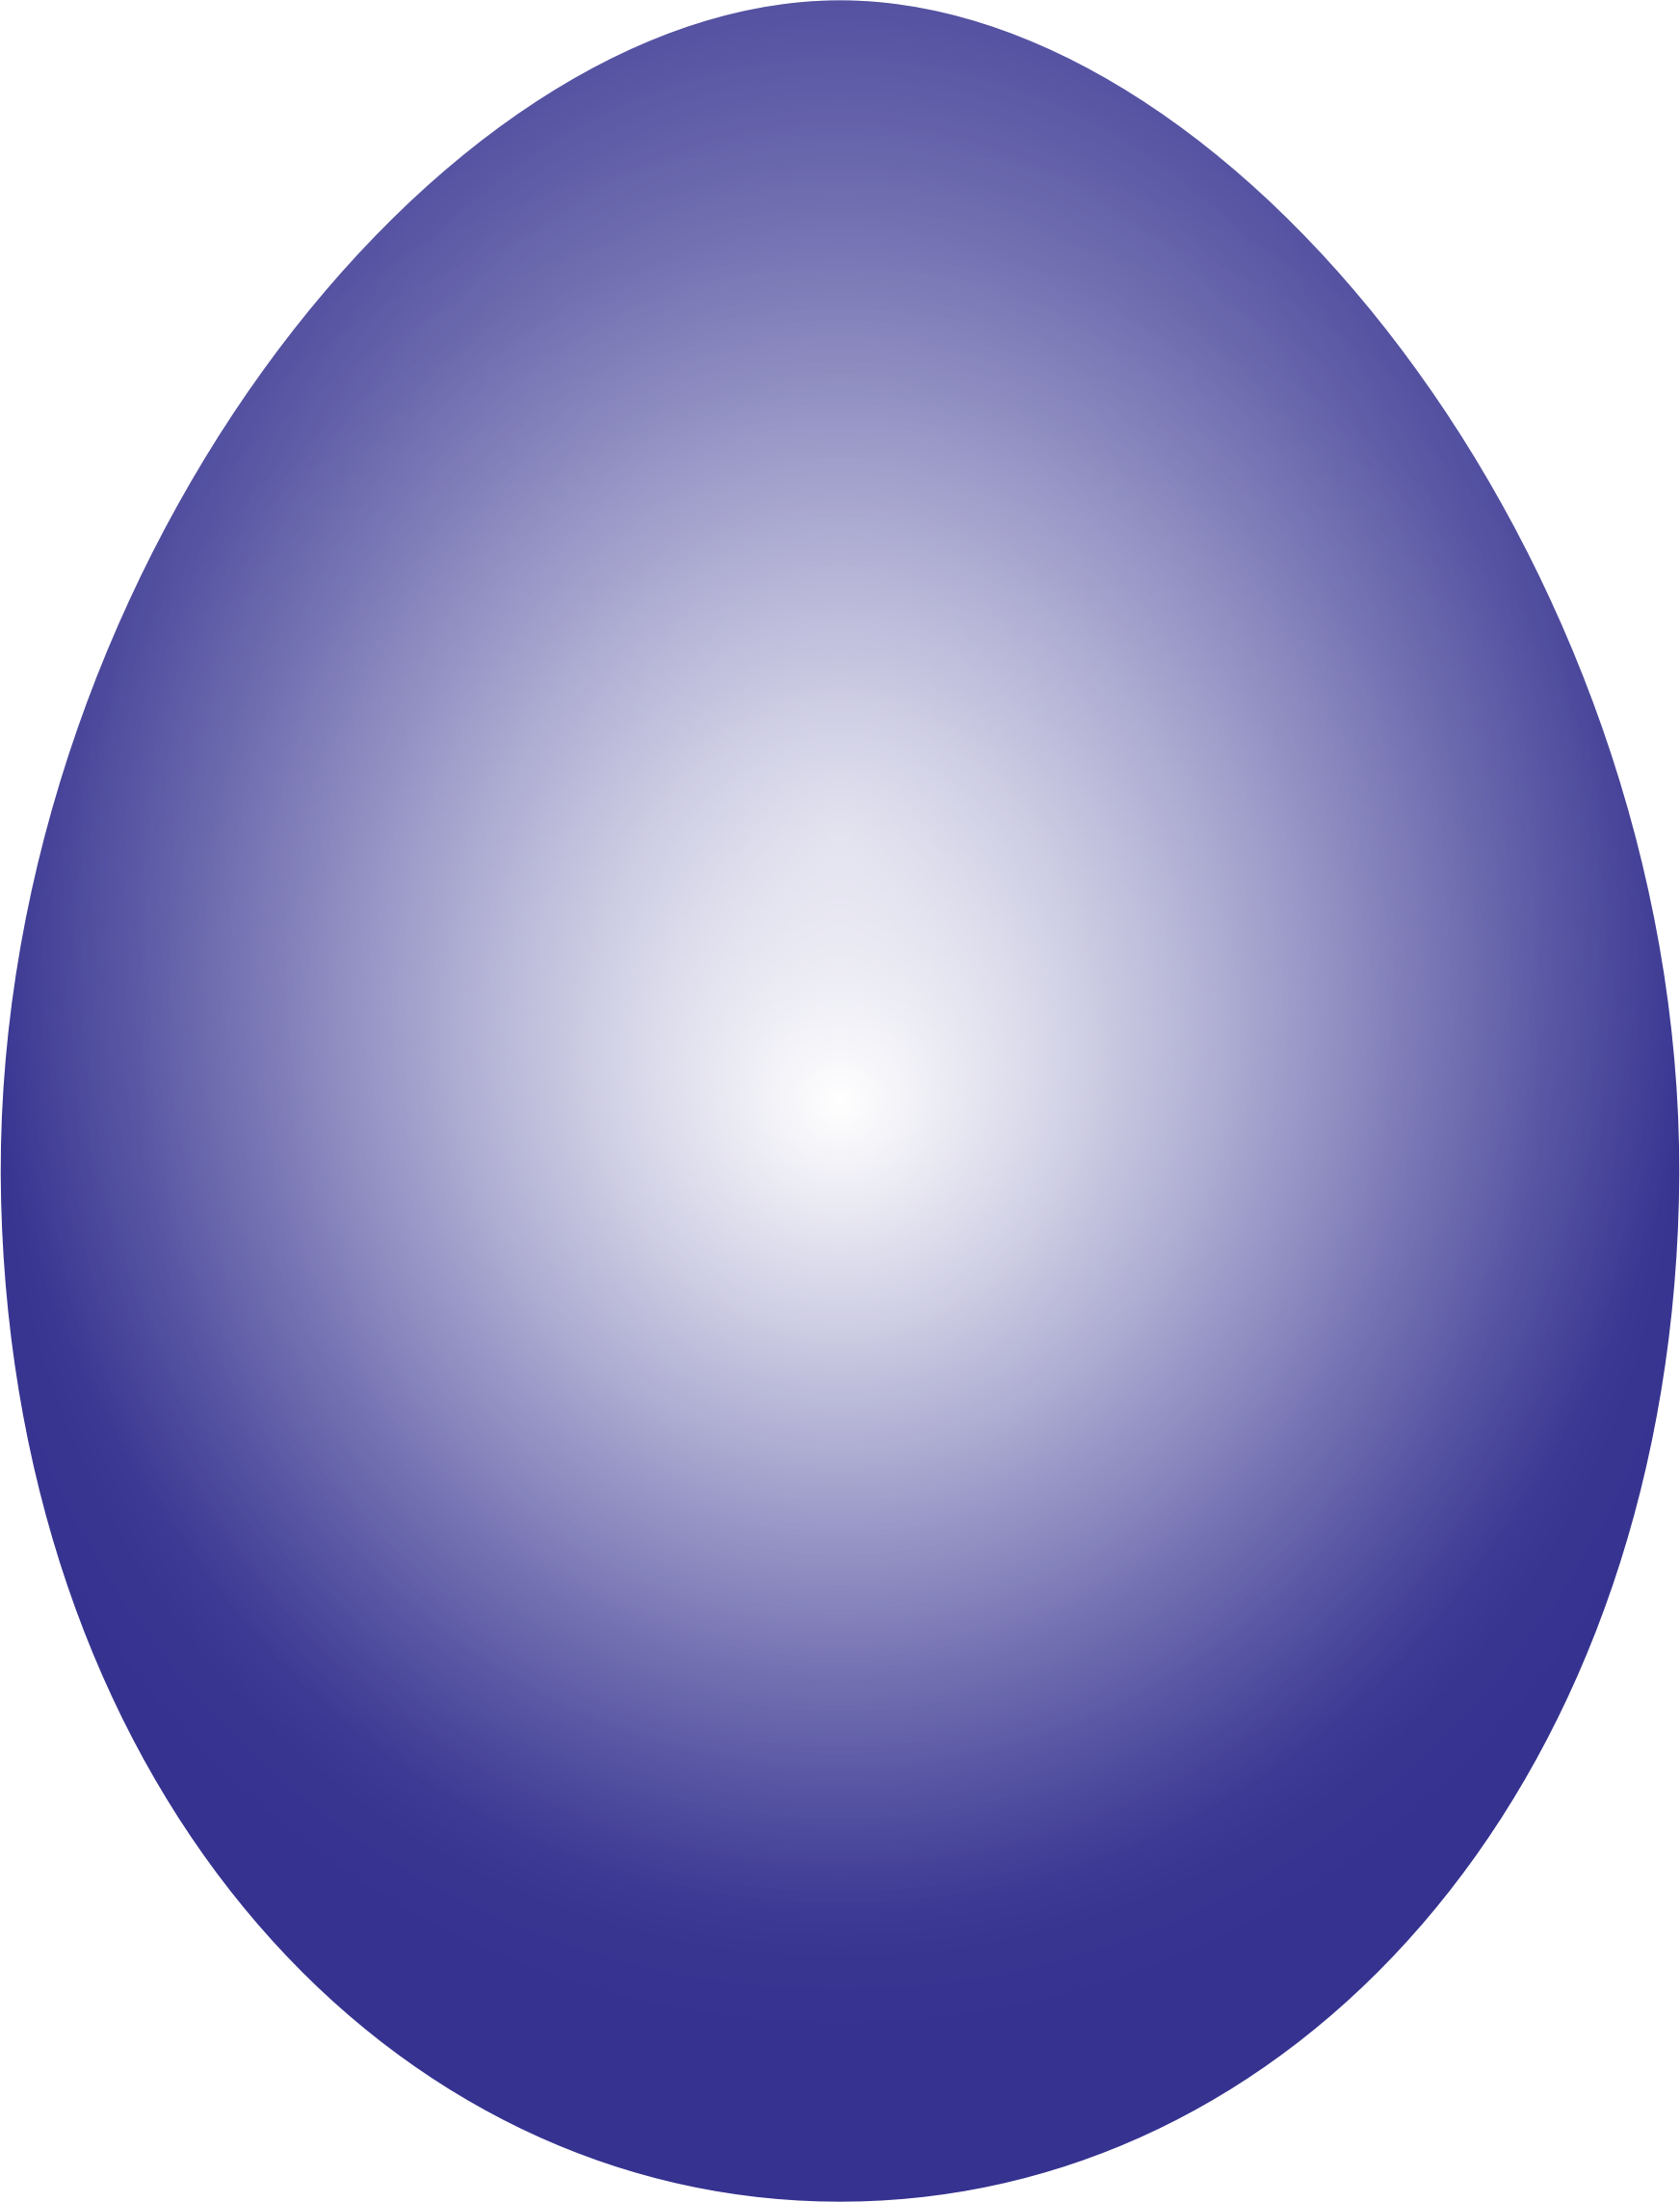 Clipart - Purple Easter Egg